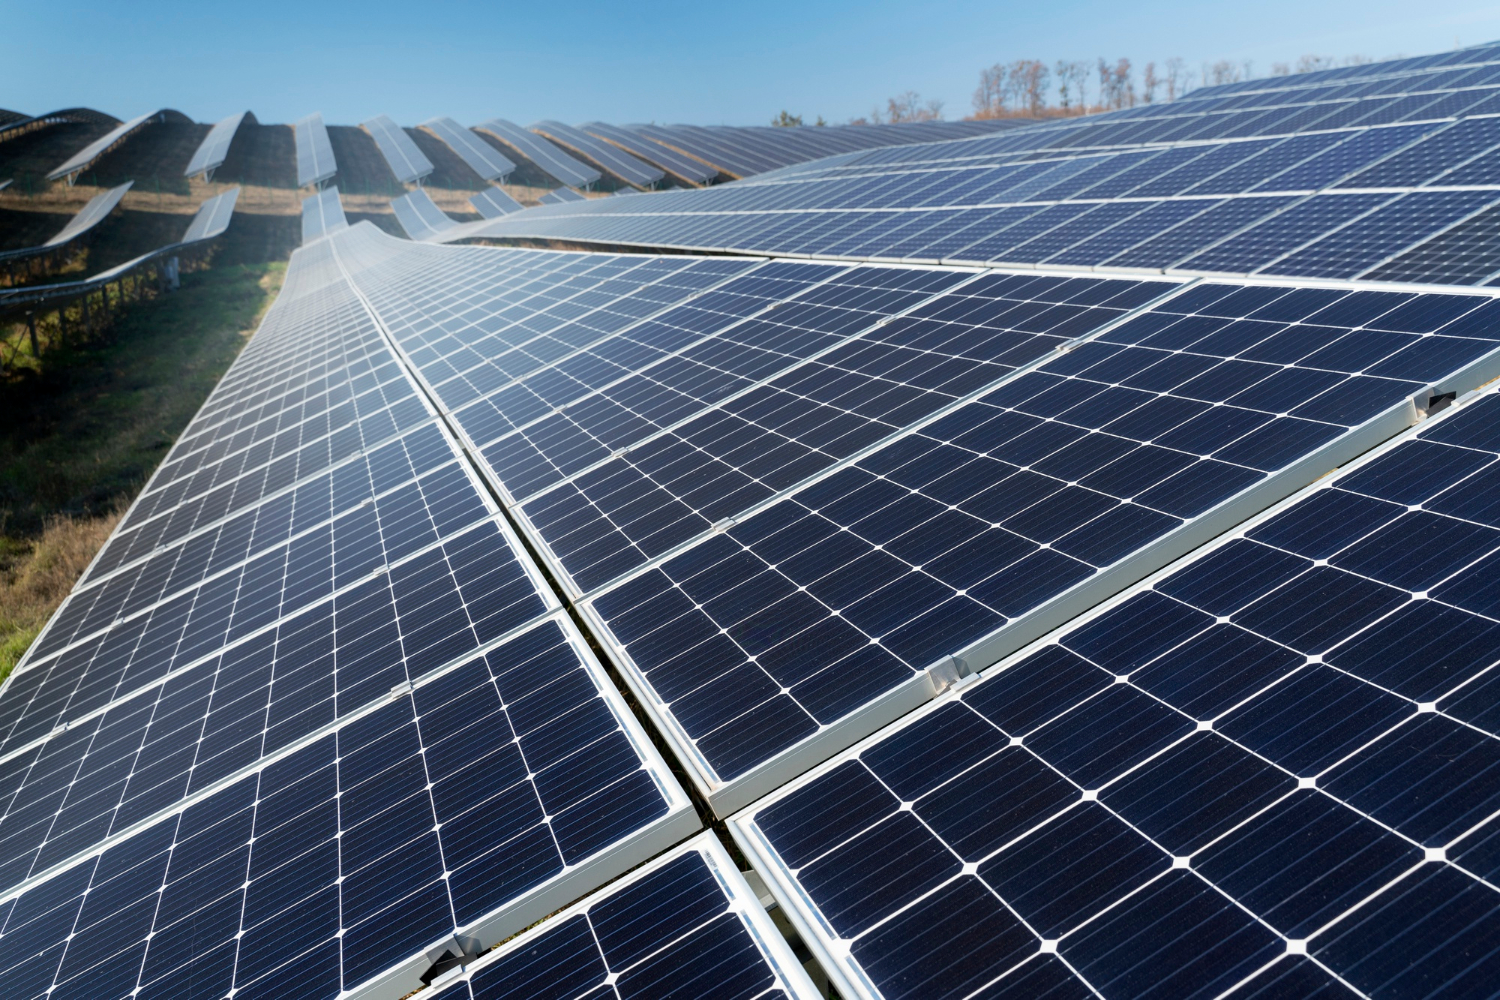 Paneles solares en comunidades de vecinos: Guía sobre autoconsumo energético colectivo